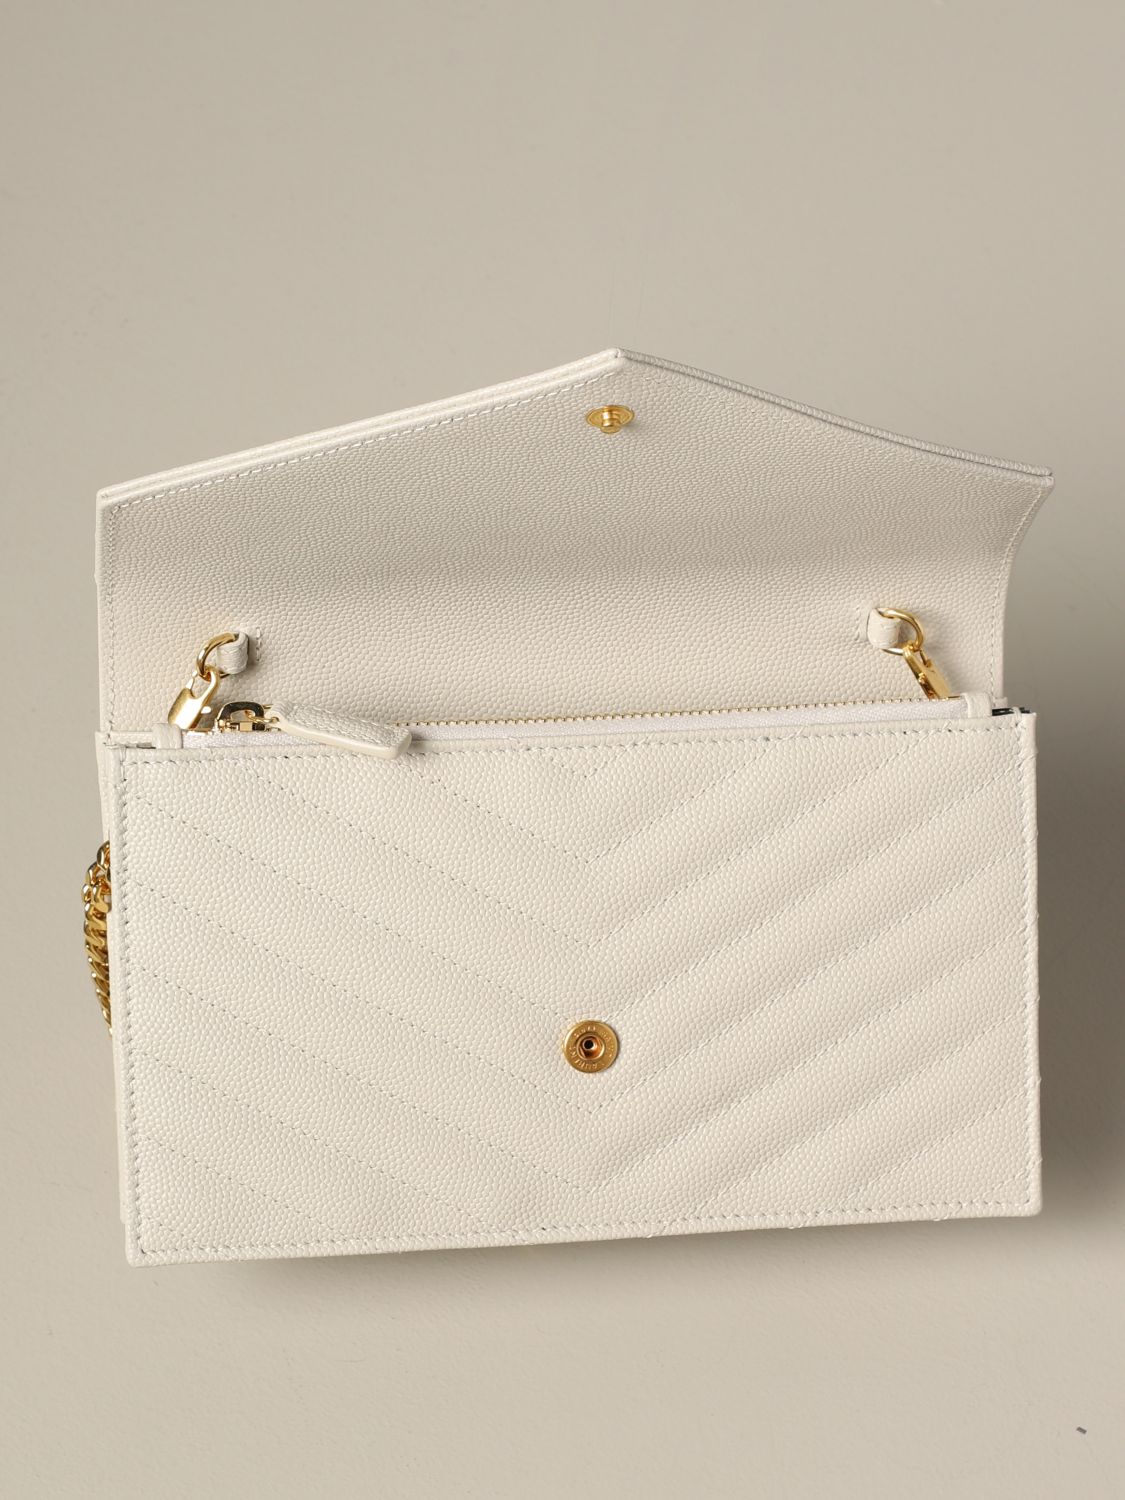 Mini sac à main Saint Laurent: Sac Monogram envelope chain wallet Saint Laurent en cuir grain de poudre jaune crème 4